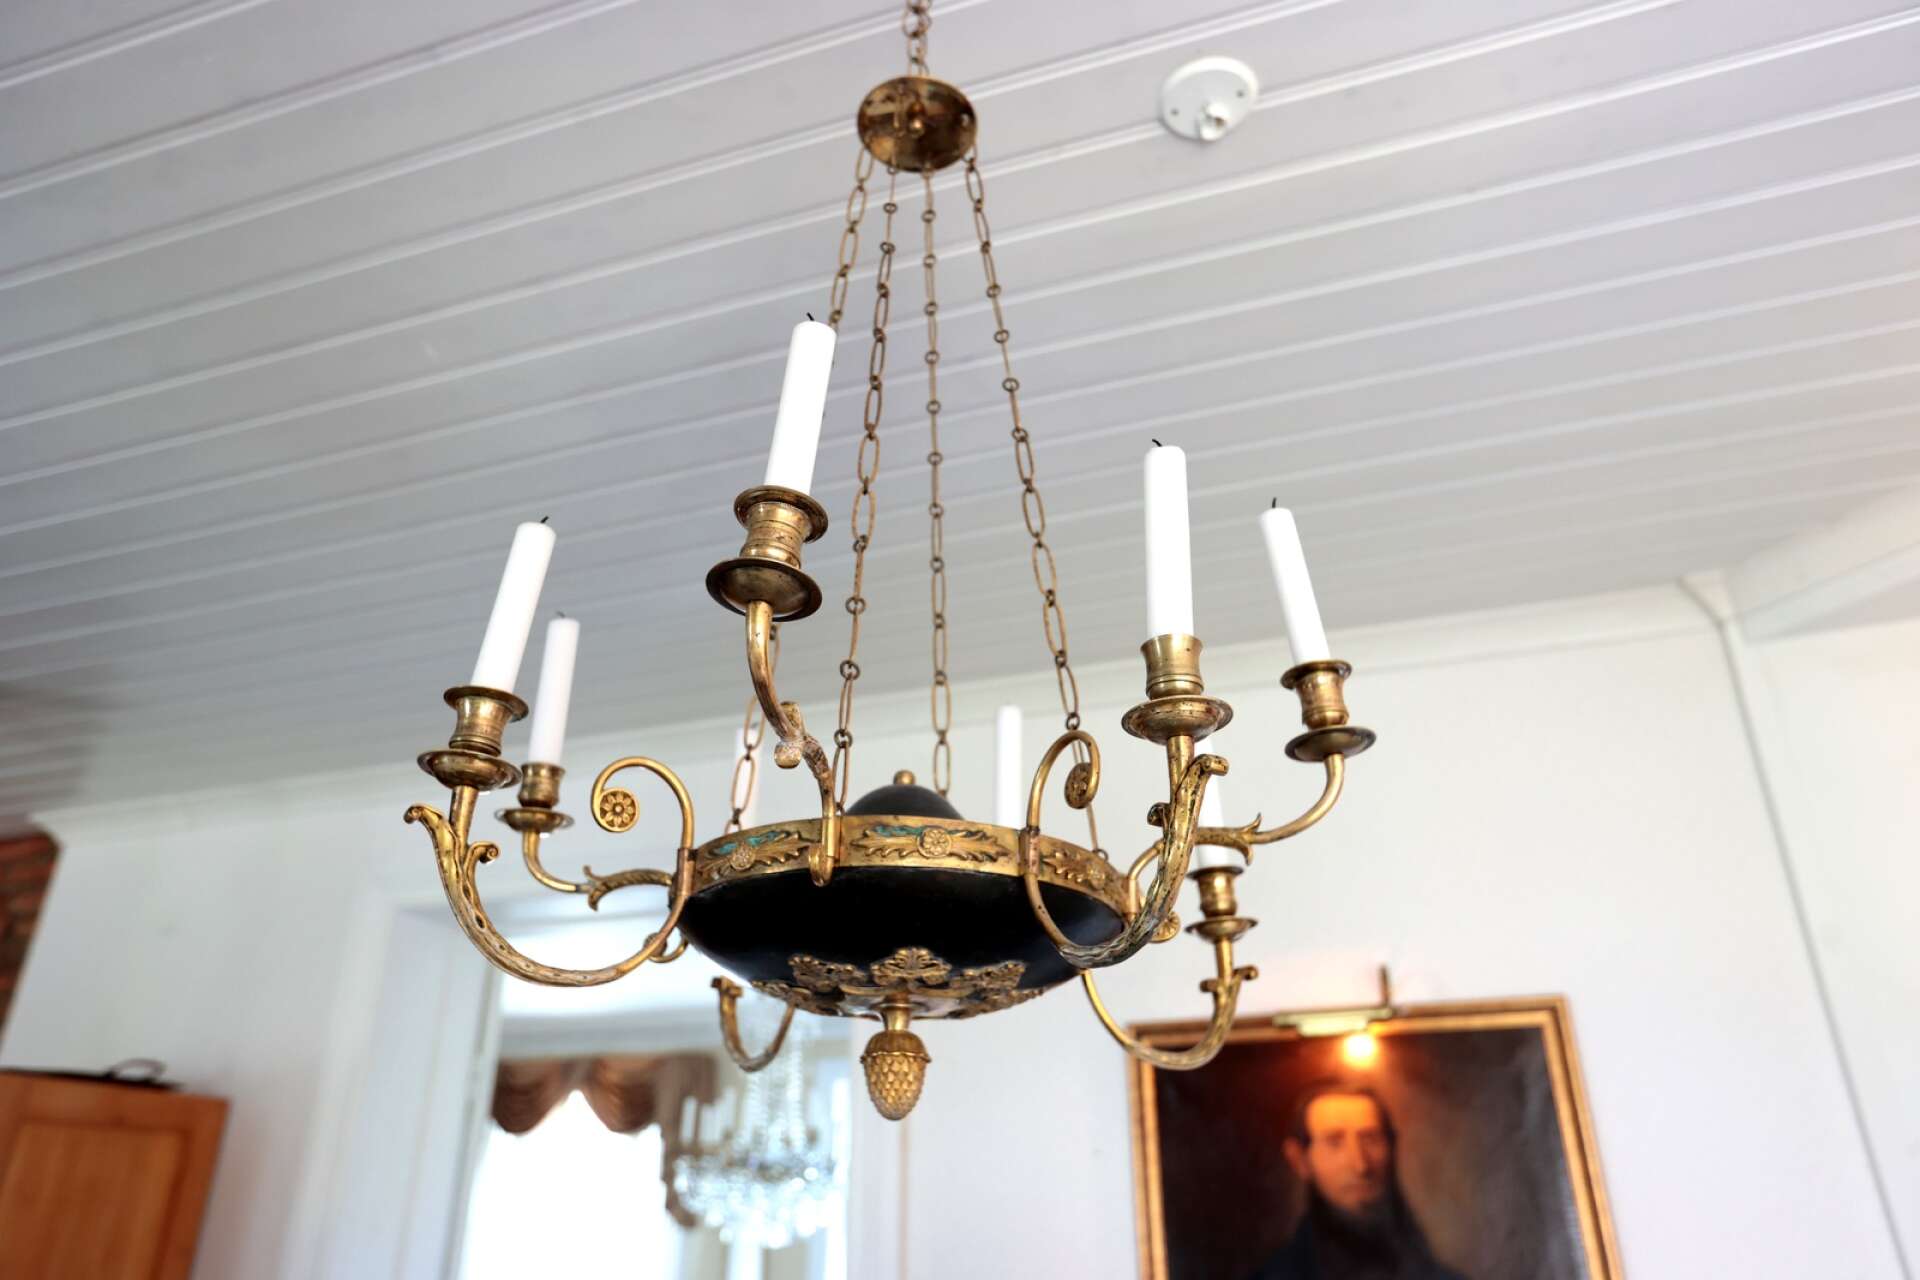 Lampan som köptes nedpackad visade sig vara äkta svensk empire från tidigt 1800-tal. Nu får den hänga över köksbordet. 